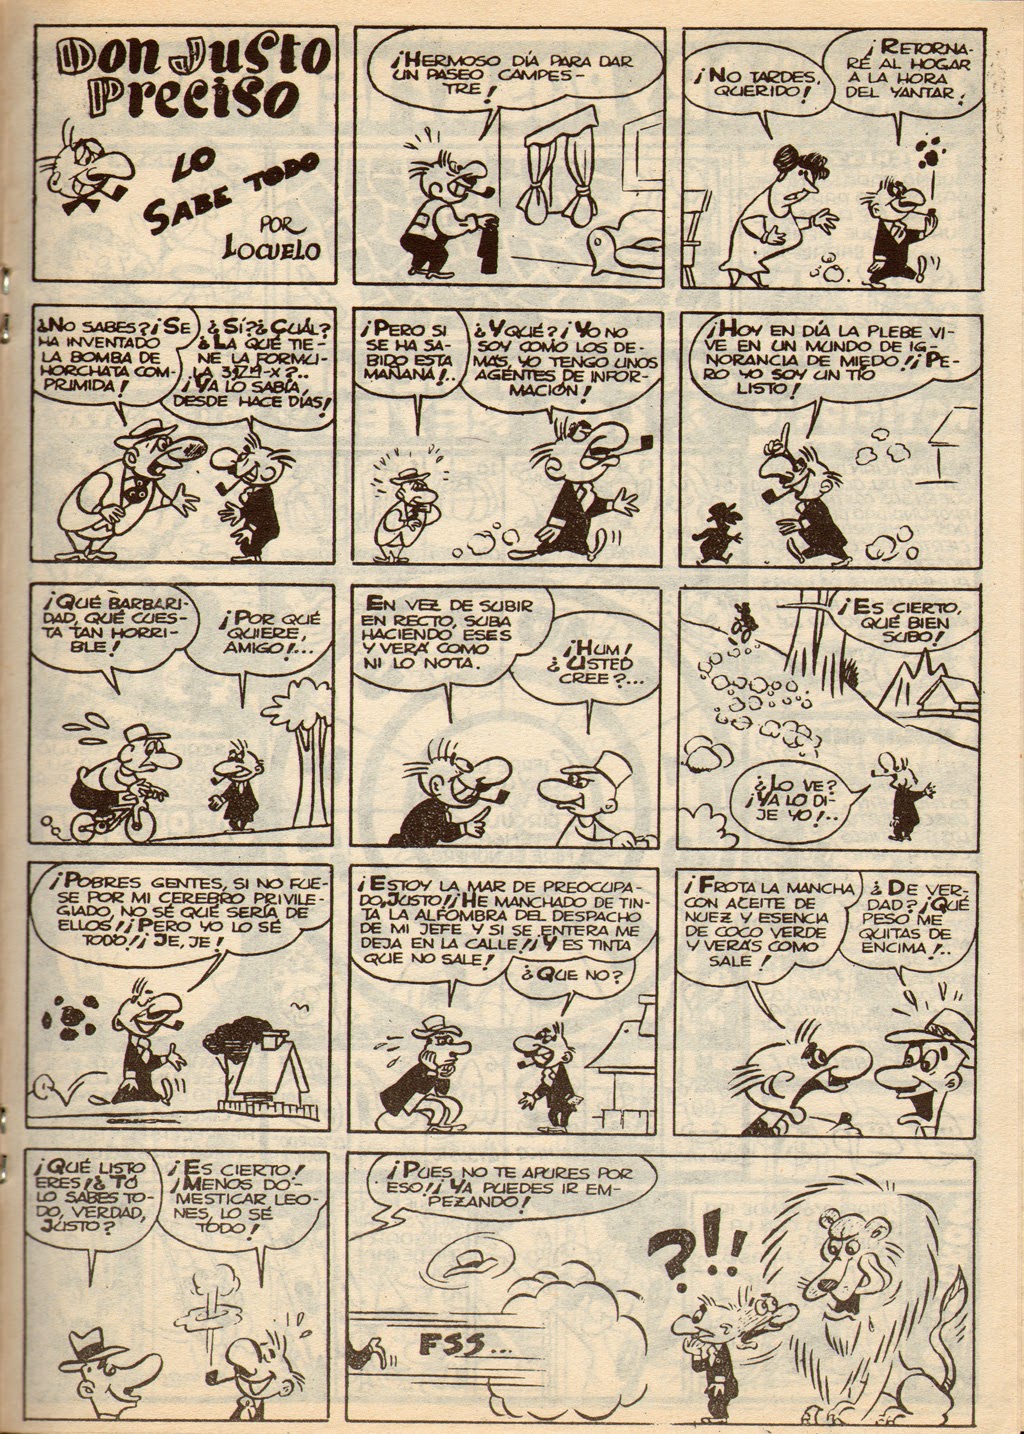 Don Justo Preciso, Humor de bolsillo Almanaque 1951, con el seudónimo Locuelo